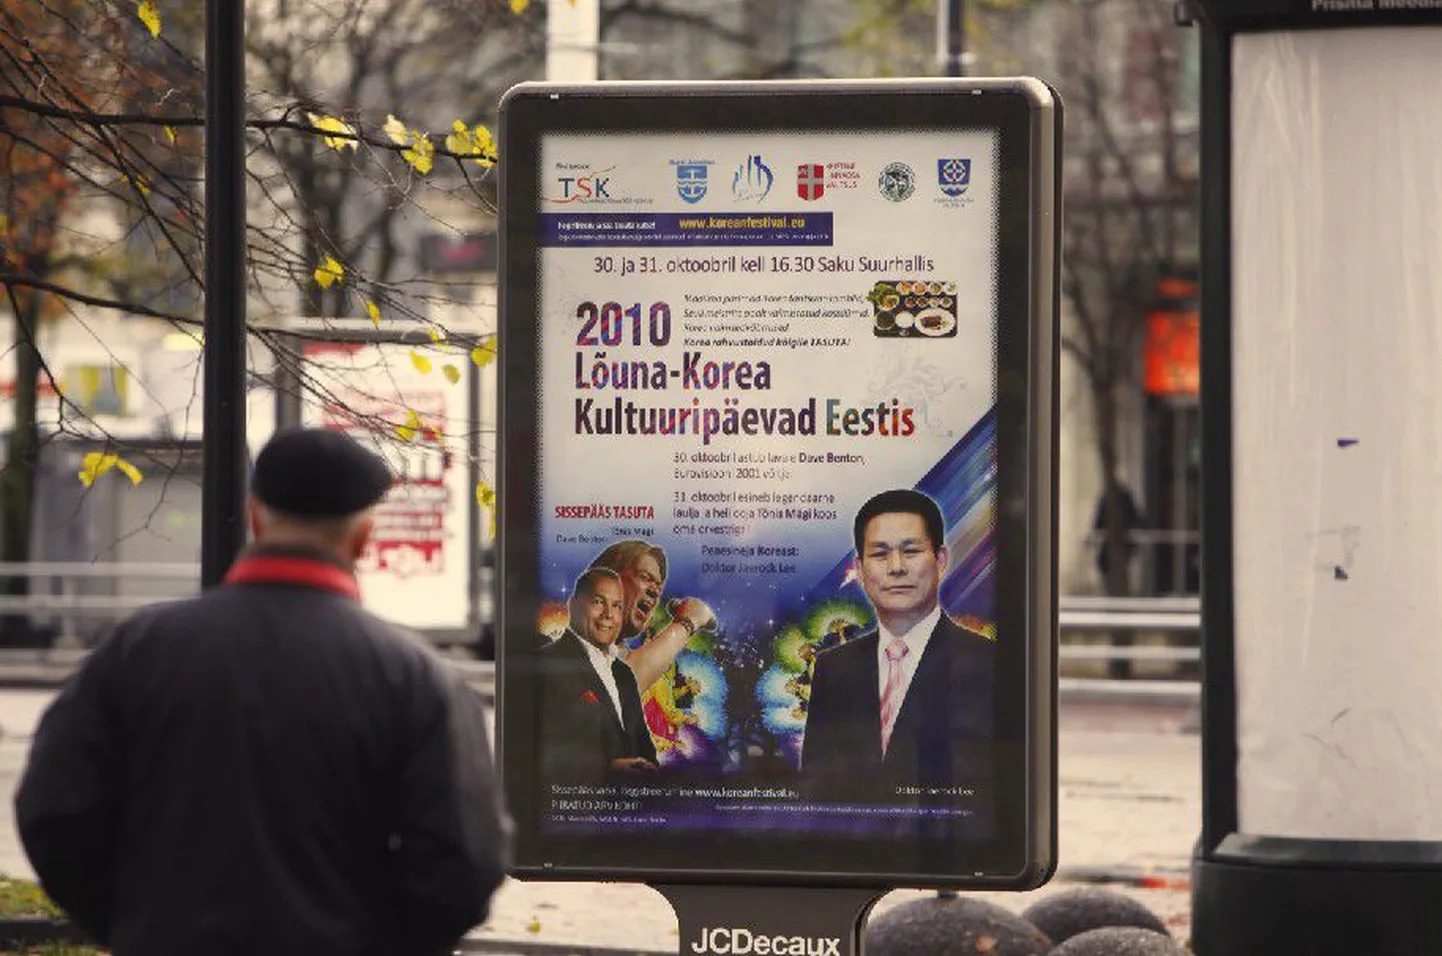 В Таллинне Дни культуры Южной Кореи рекламируются с большим размахом, но информация, которая   приведена на плакатах и растяжках в Таллинне, не полностью соответствует действительности.